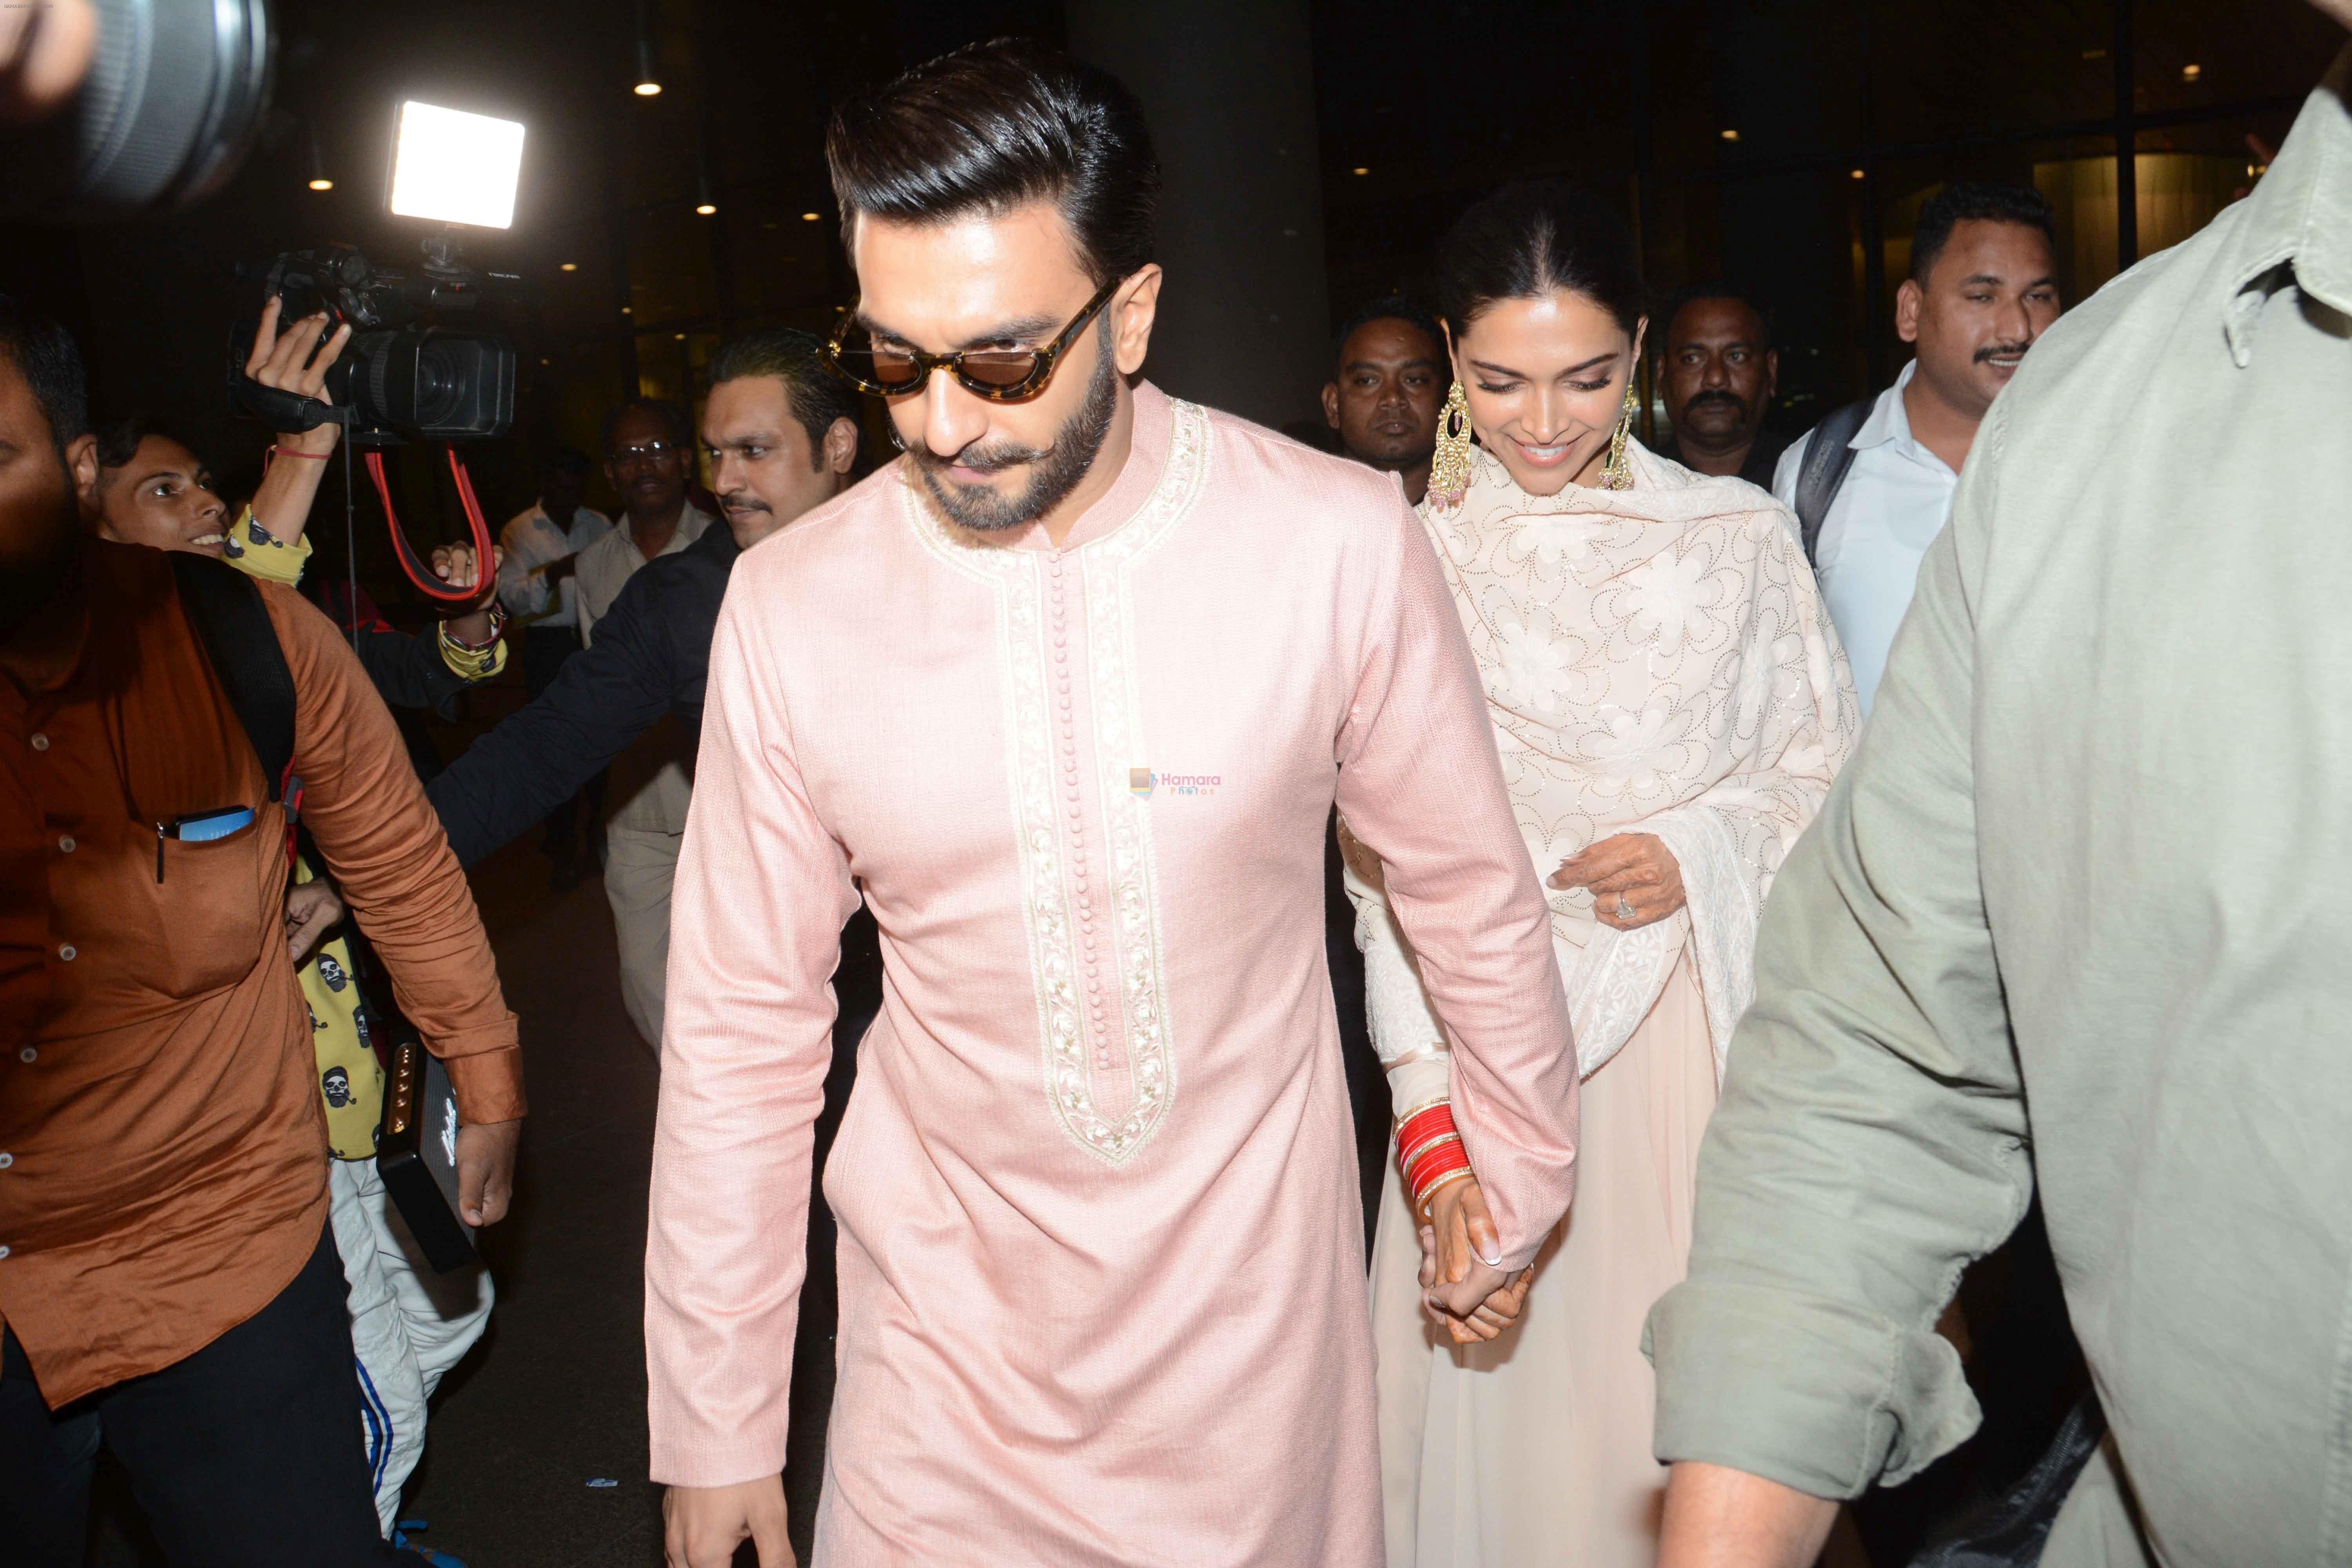 Ranveer Singh with his wife Deepika Padukone was spotted at International Airport, Andheri in Mumbai on 22nd Nov 2018